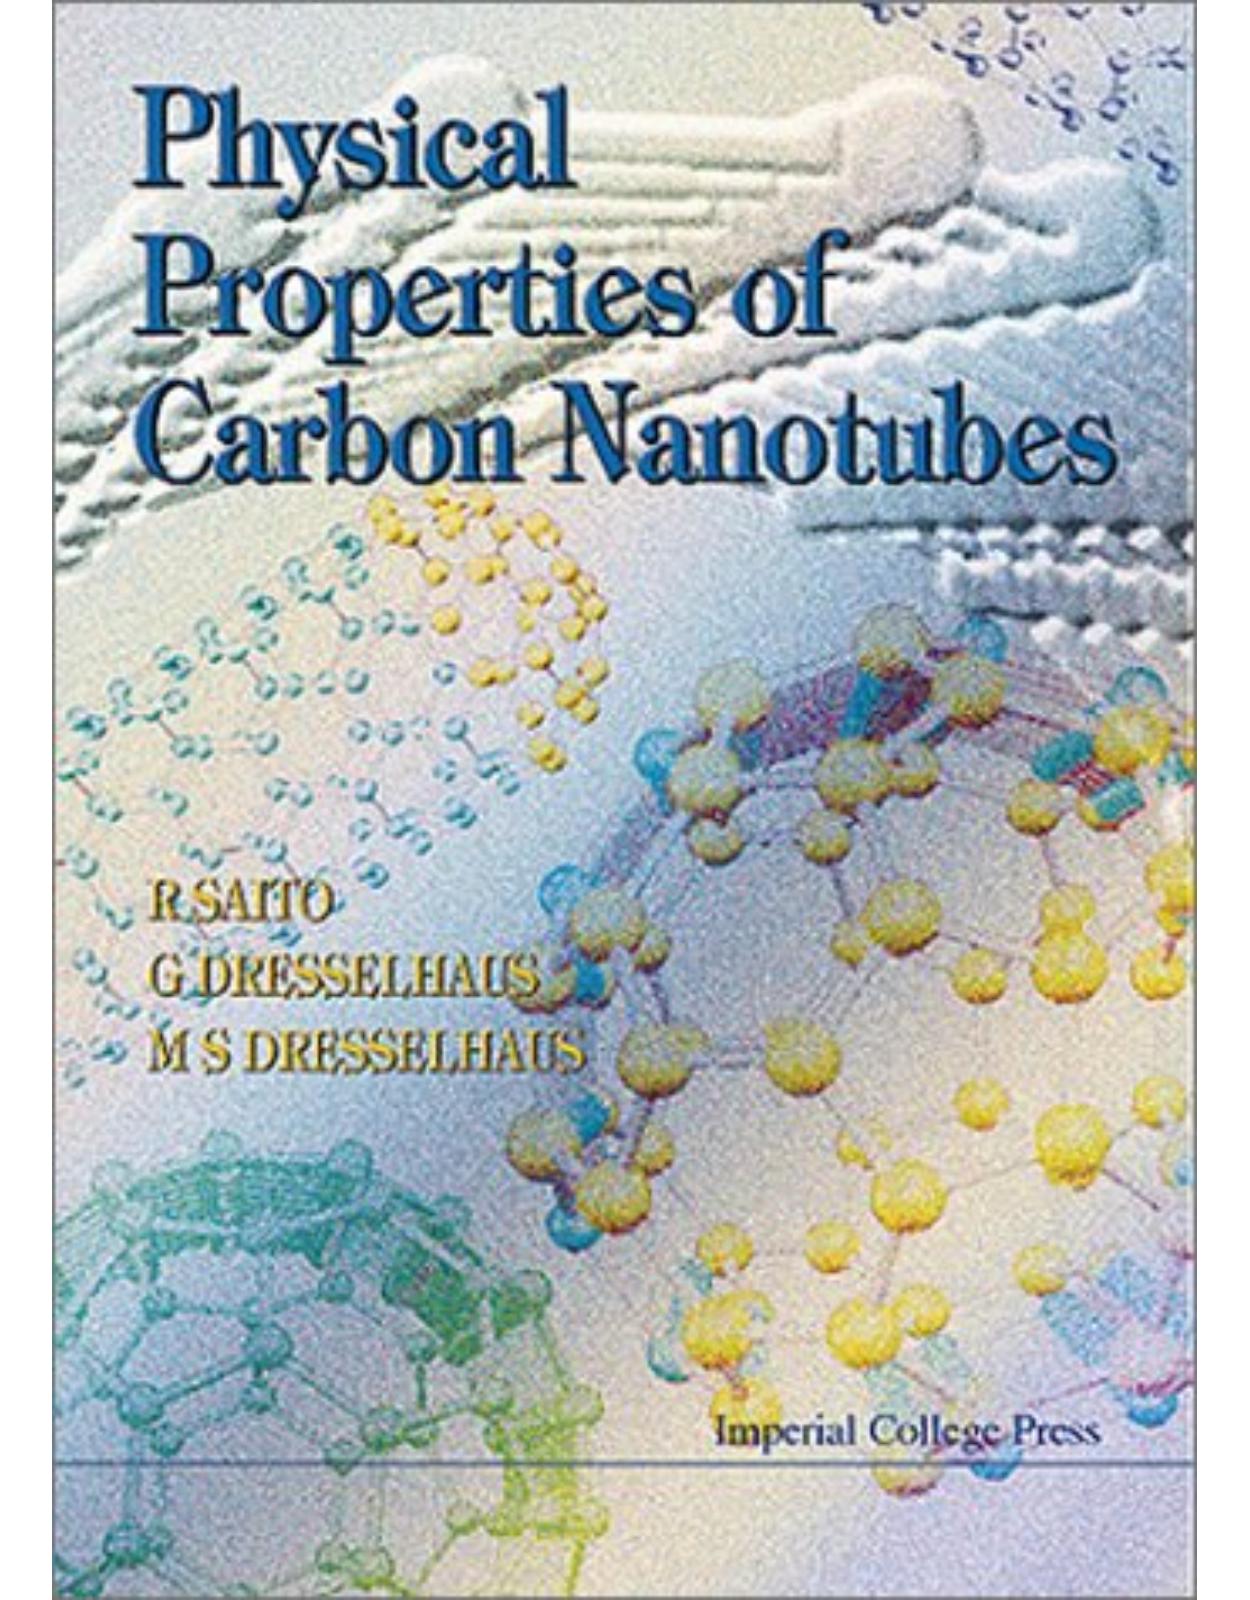 Physical Properties of Carbon Nanotubes